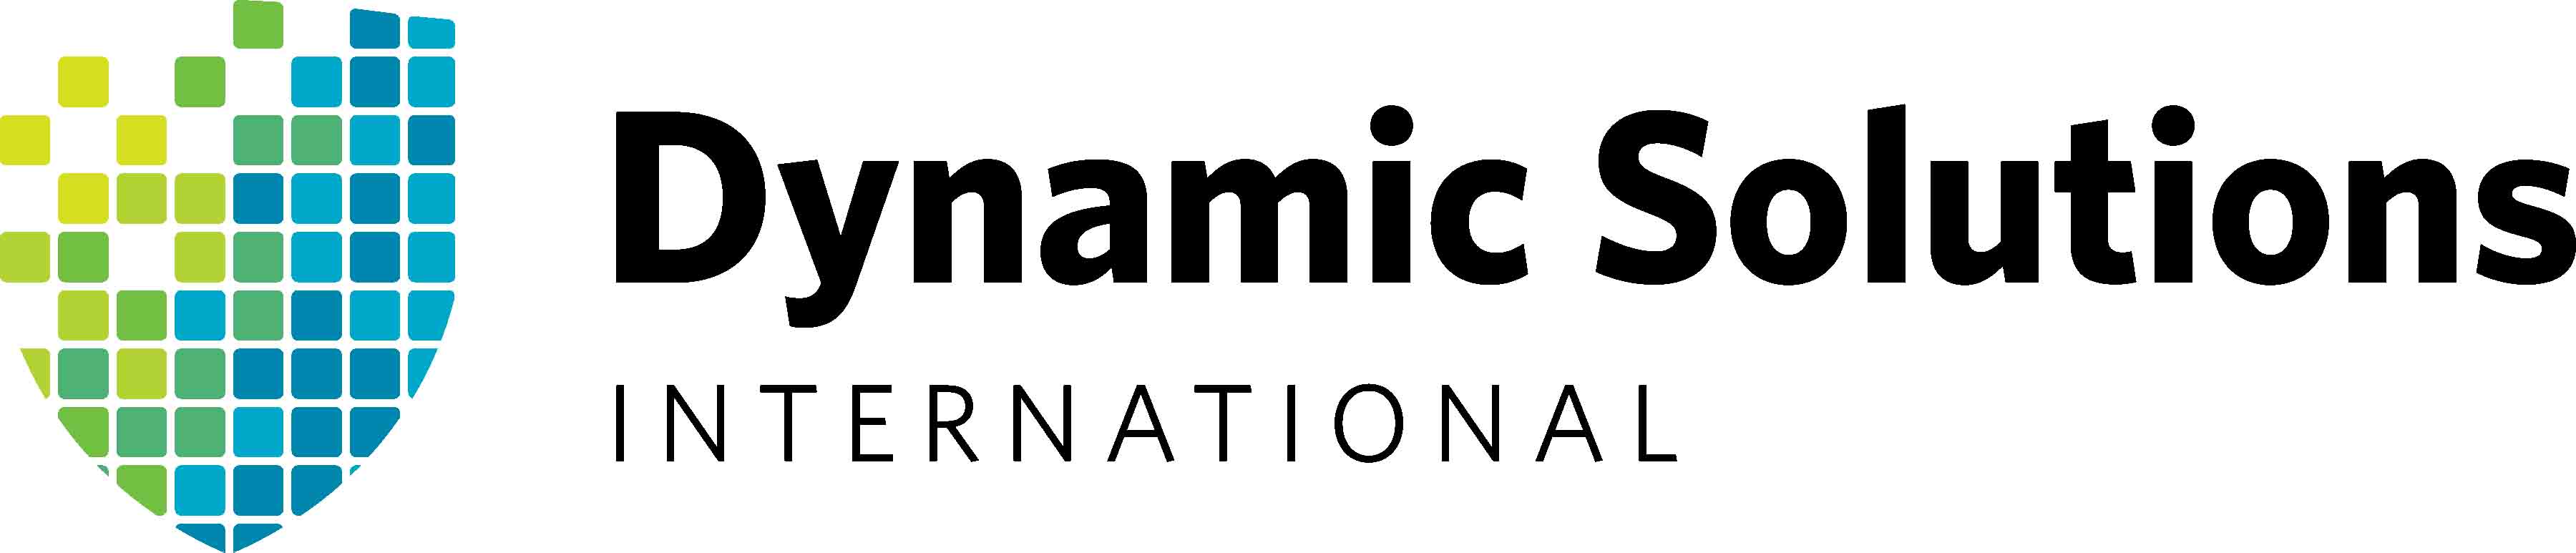 Dynamic Solutions International Logo